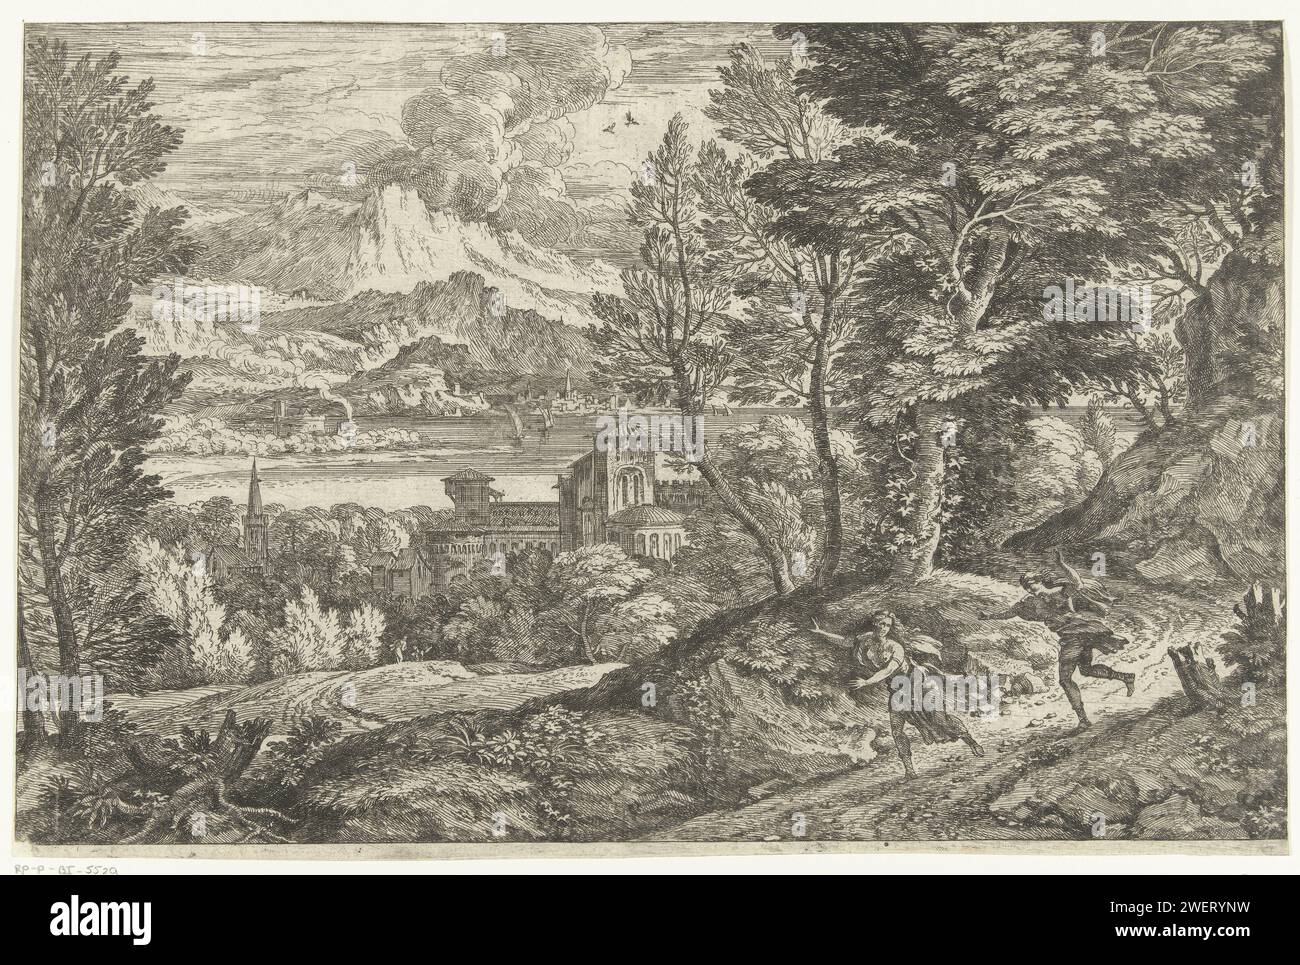 Frau verfolgt von einem jungen Mann, Adriaen van der Kabel, 1648 - 1705 Druck Landschaft mit Bergweg auf dem eine Frau läuft, gefolgt von einem jungen Mann. Über einen Feldblick auf ein Dorf, hinter dem ein See mit Bergen im Hintergrund. Dritter Ausdruck aus der Sechserserie. Papierätzlandschaften. Fliegen, weglaufen, verfolgen Stockfoto